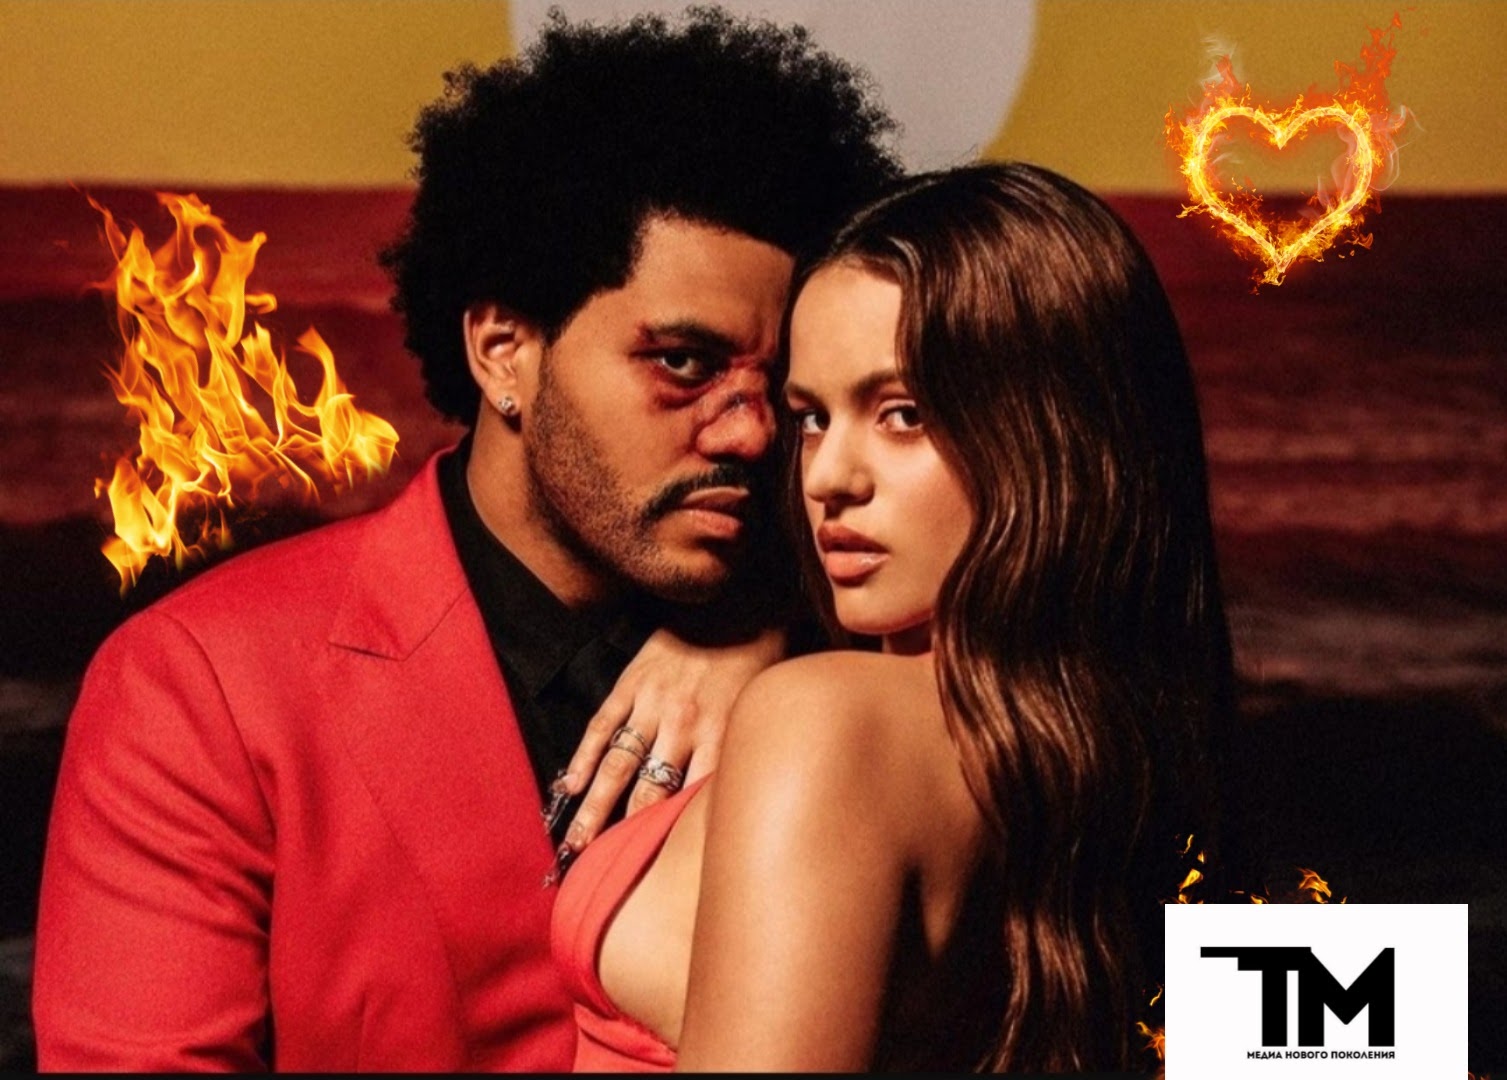 Обновленный “Blinding lights” от The Weeknd и Розали